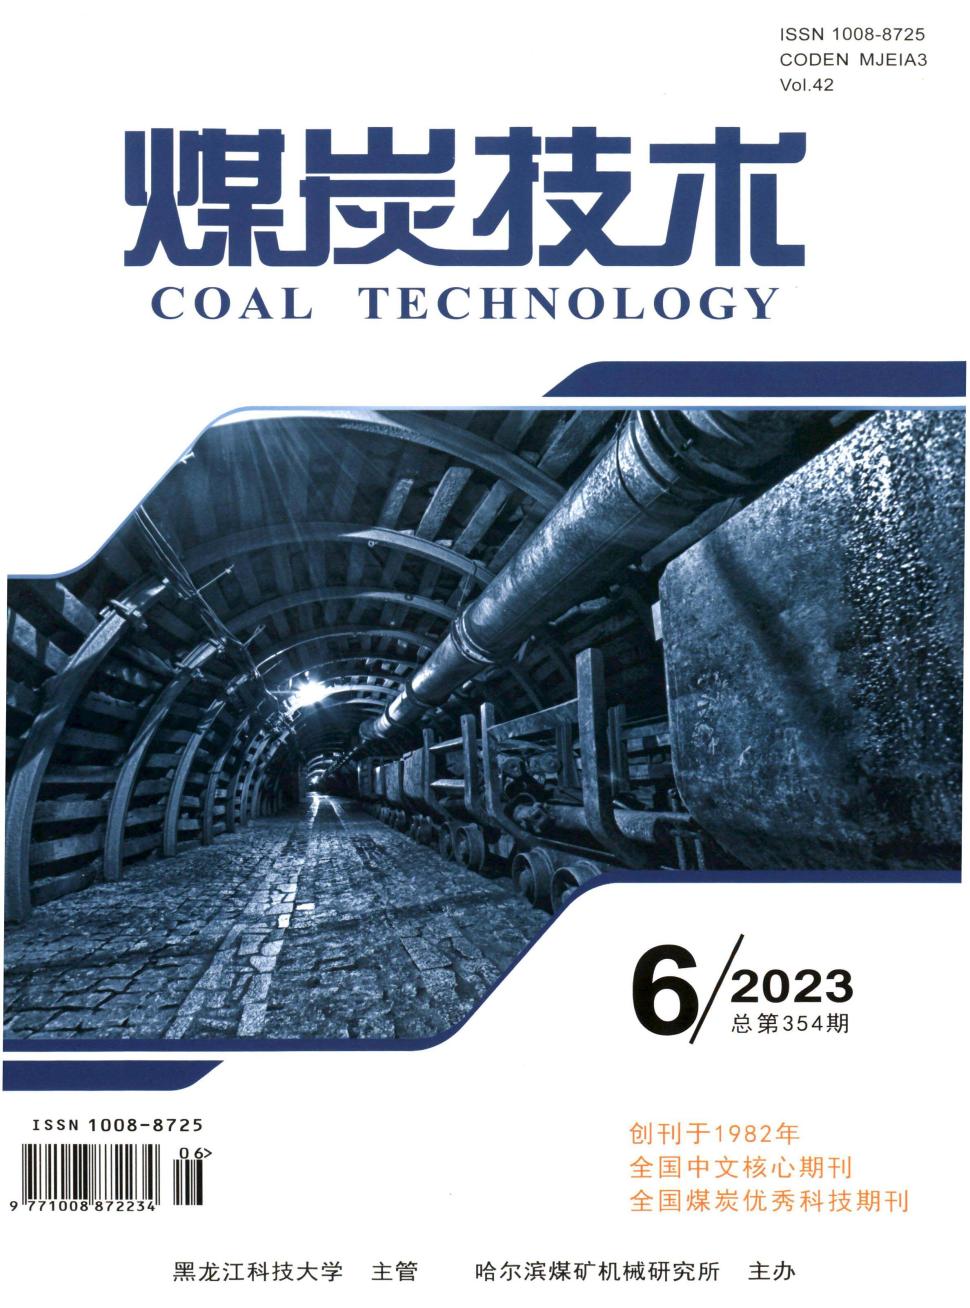 煤炭技术杂志